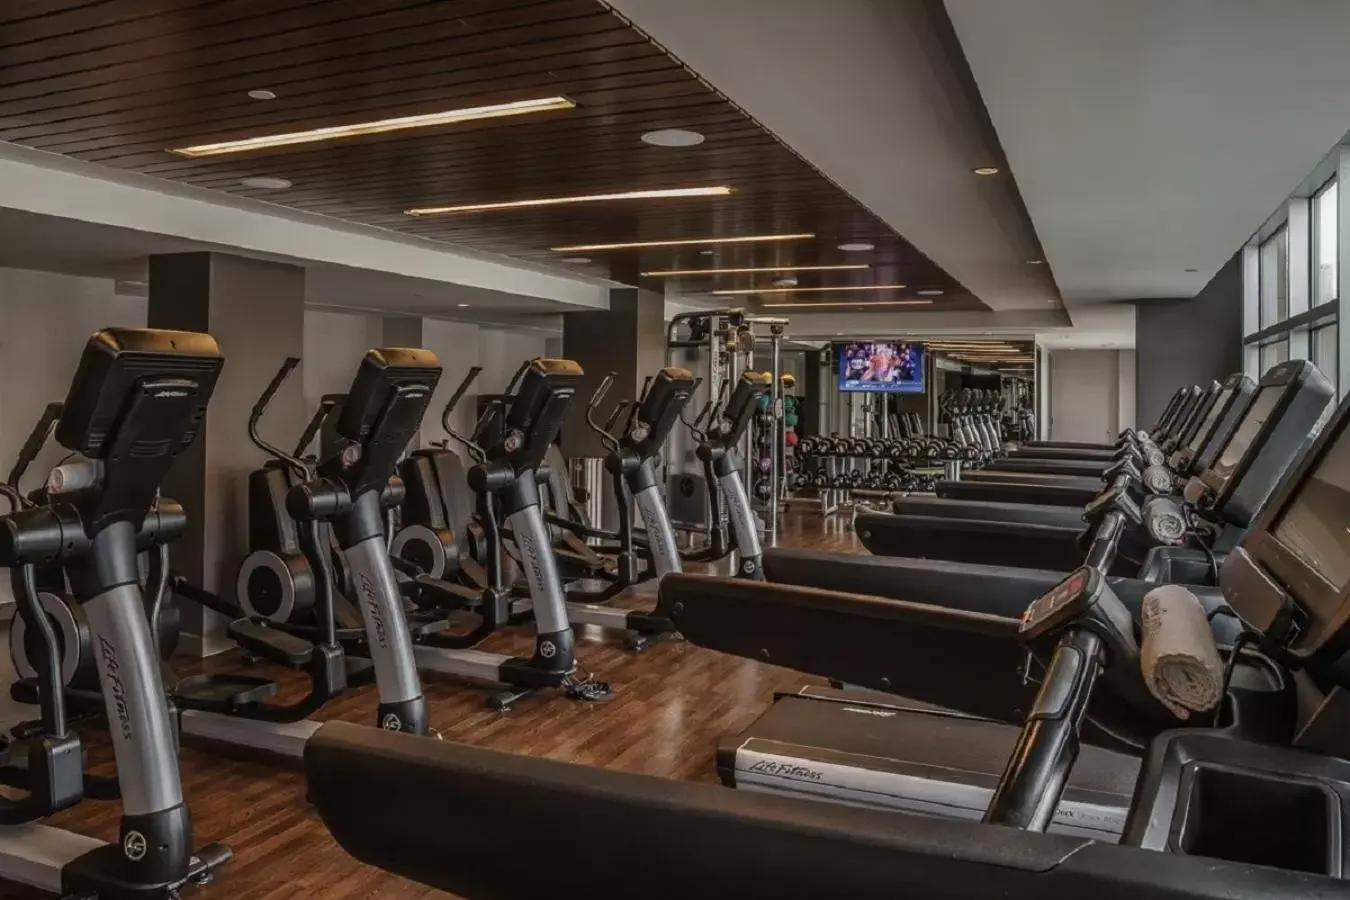 Fitness centre/facilities, Fitness Center/Facilities in Hyatt Regency Houston Galleria